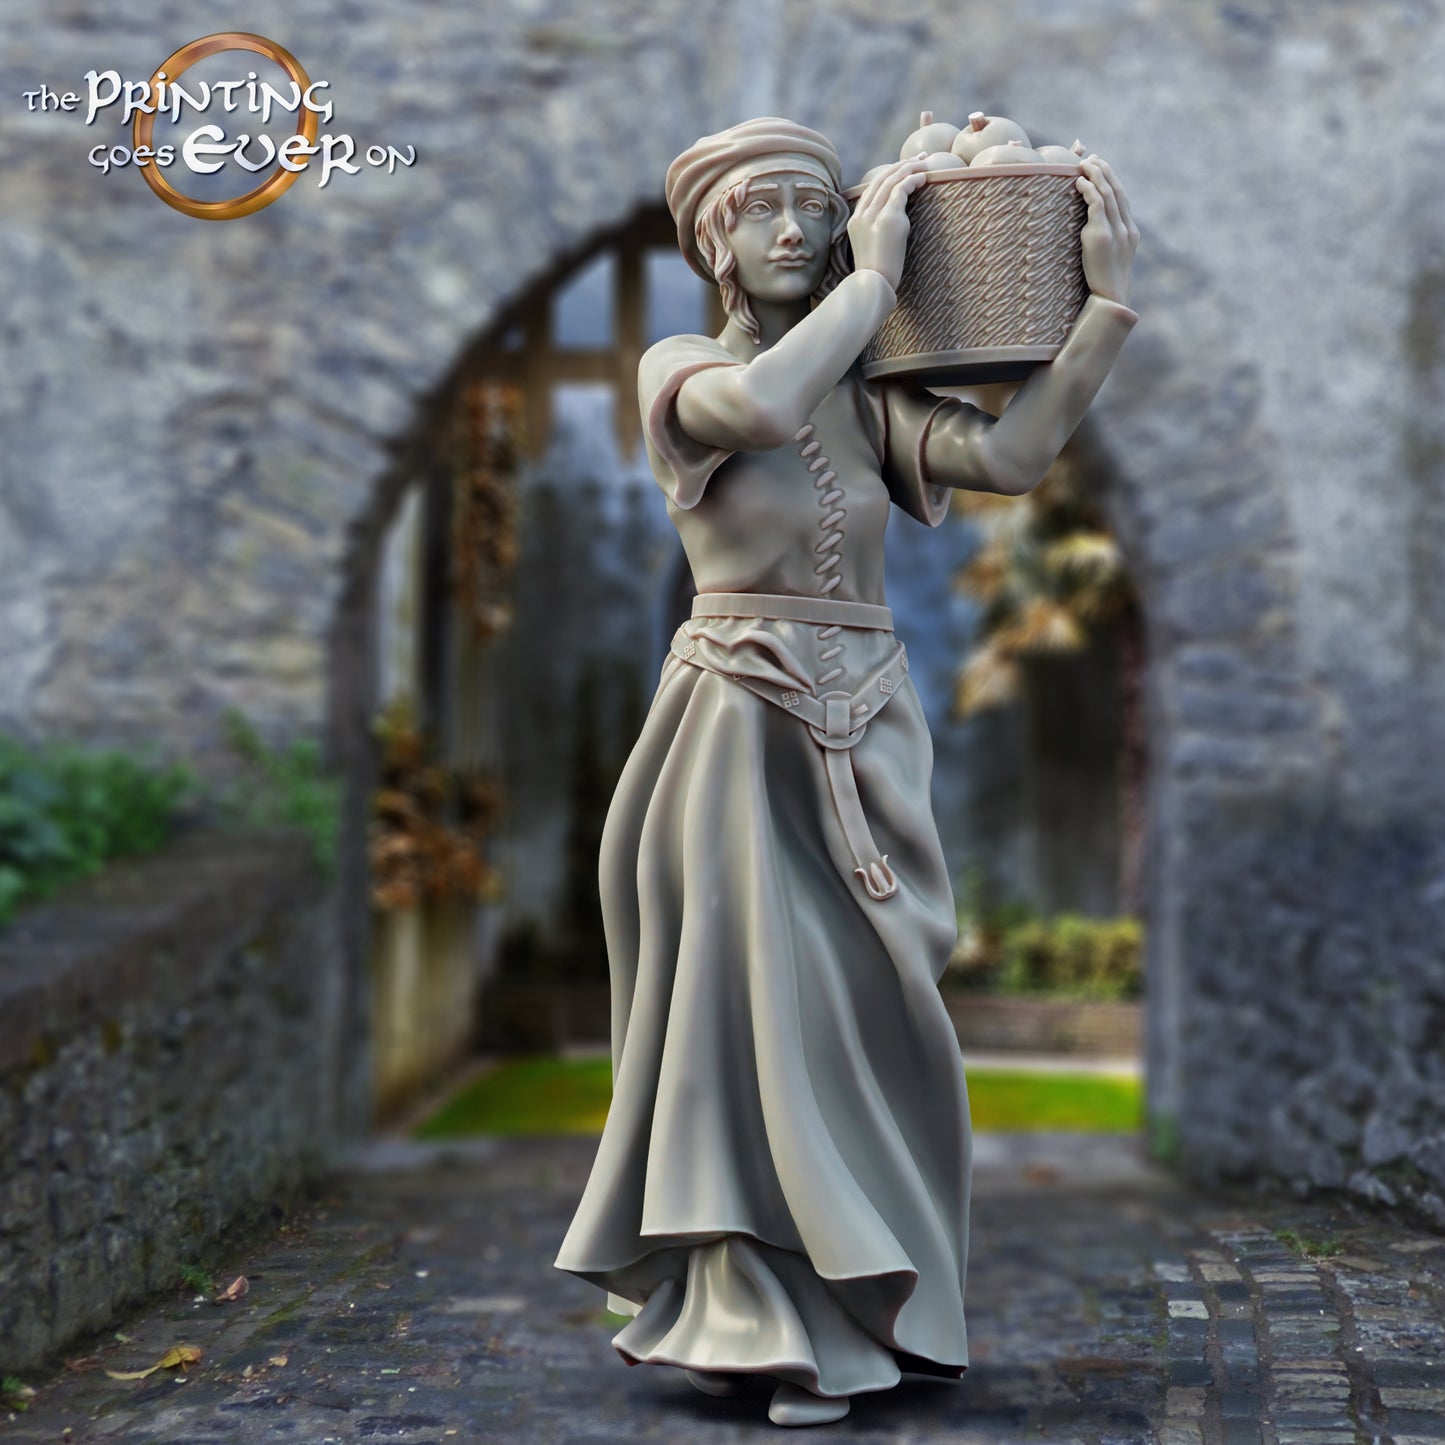 Produktfoto mittelalterliche historische Figur 75mm Scale The Printing Goes Ever On (TPGEO)  0: Mittelalterliche Ritter Figuren Dorfbewohner Gewöhnliche Frau Mittelalterliche Stadt